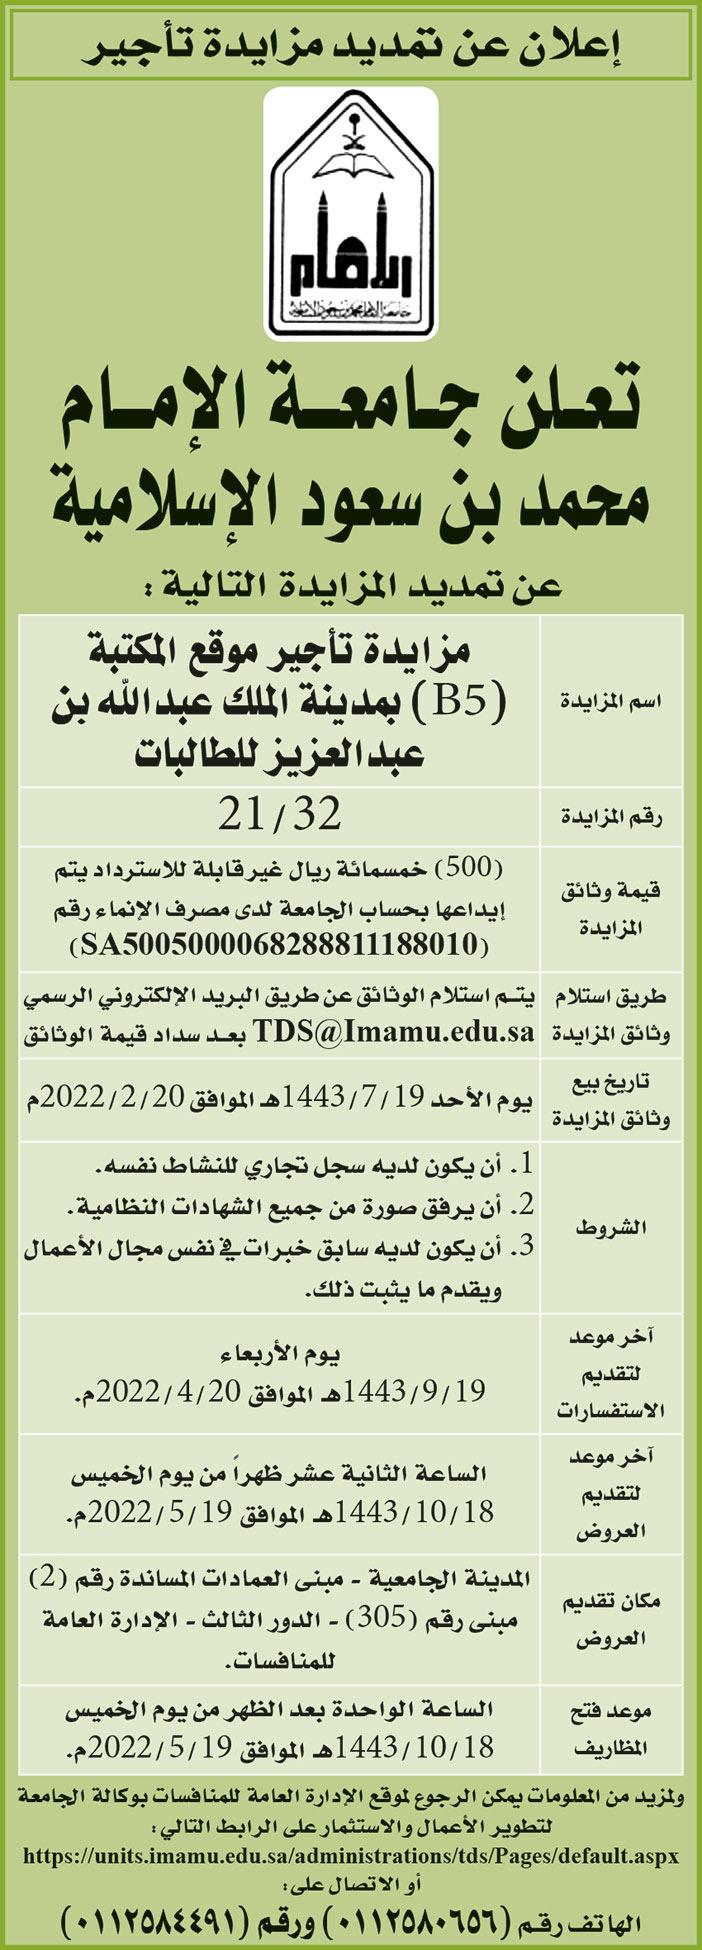 جامعة الإمام محمد بن سعود الإسلامية تمدد المزايدة على تأجير موقع المكتبة (B5) بمدينة الملك عبدالله بن عبدالعزيز للطالبات 